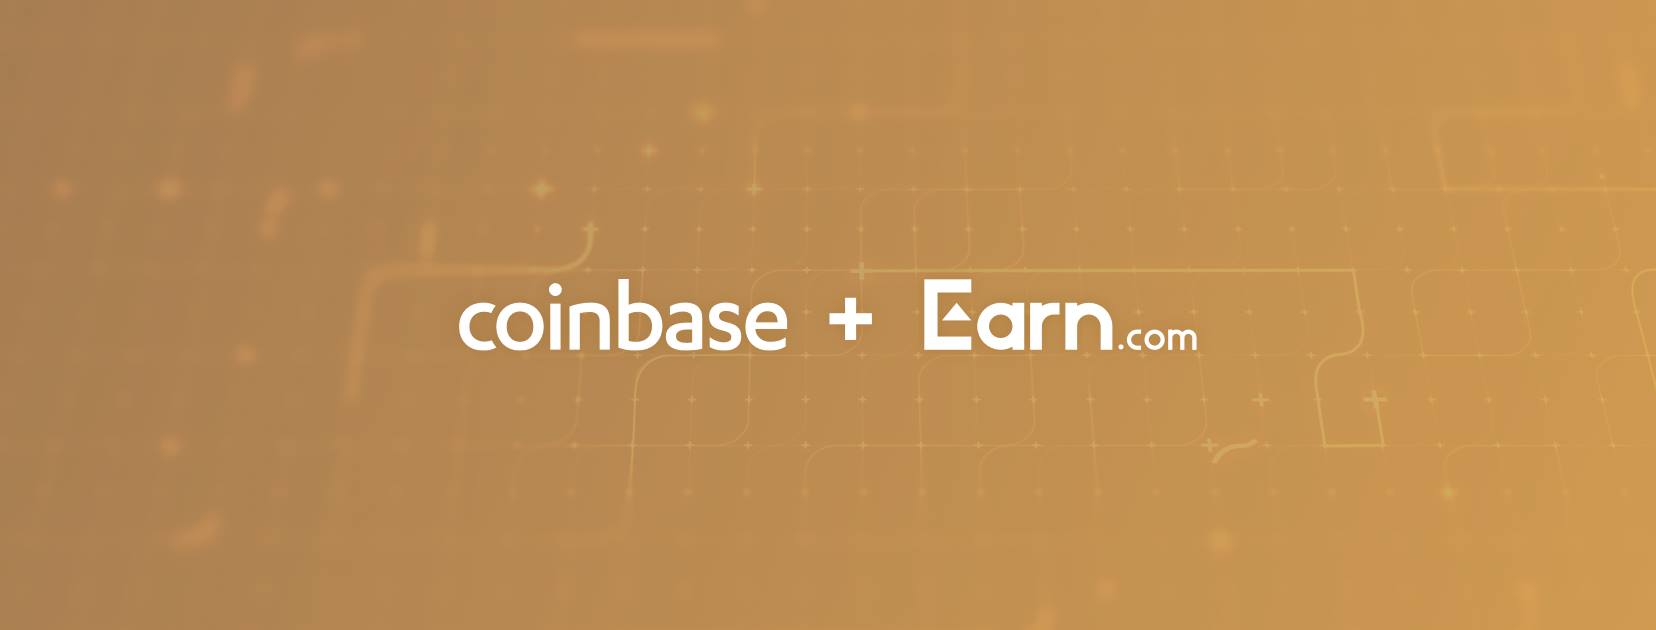 Coinbase and Earn.com